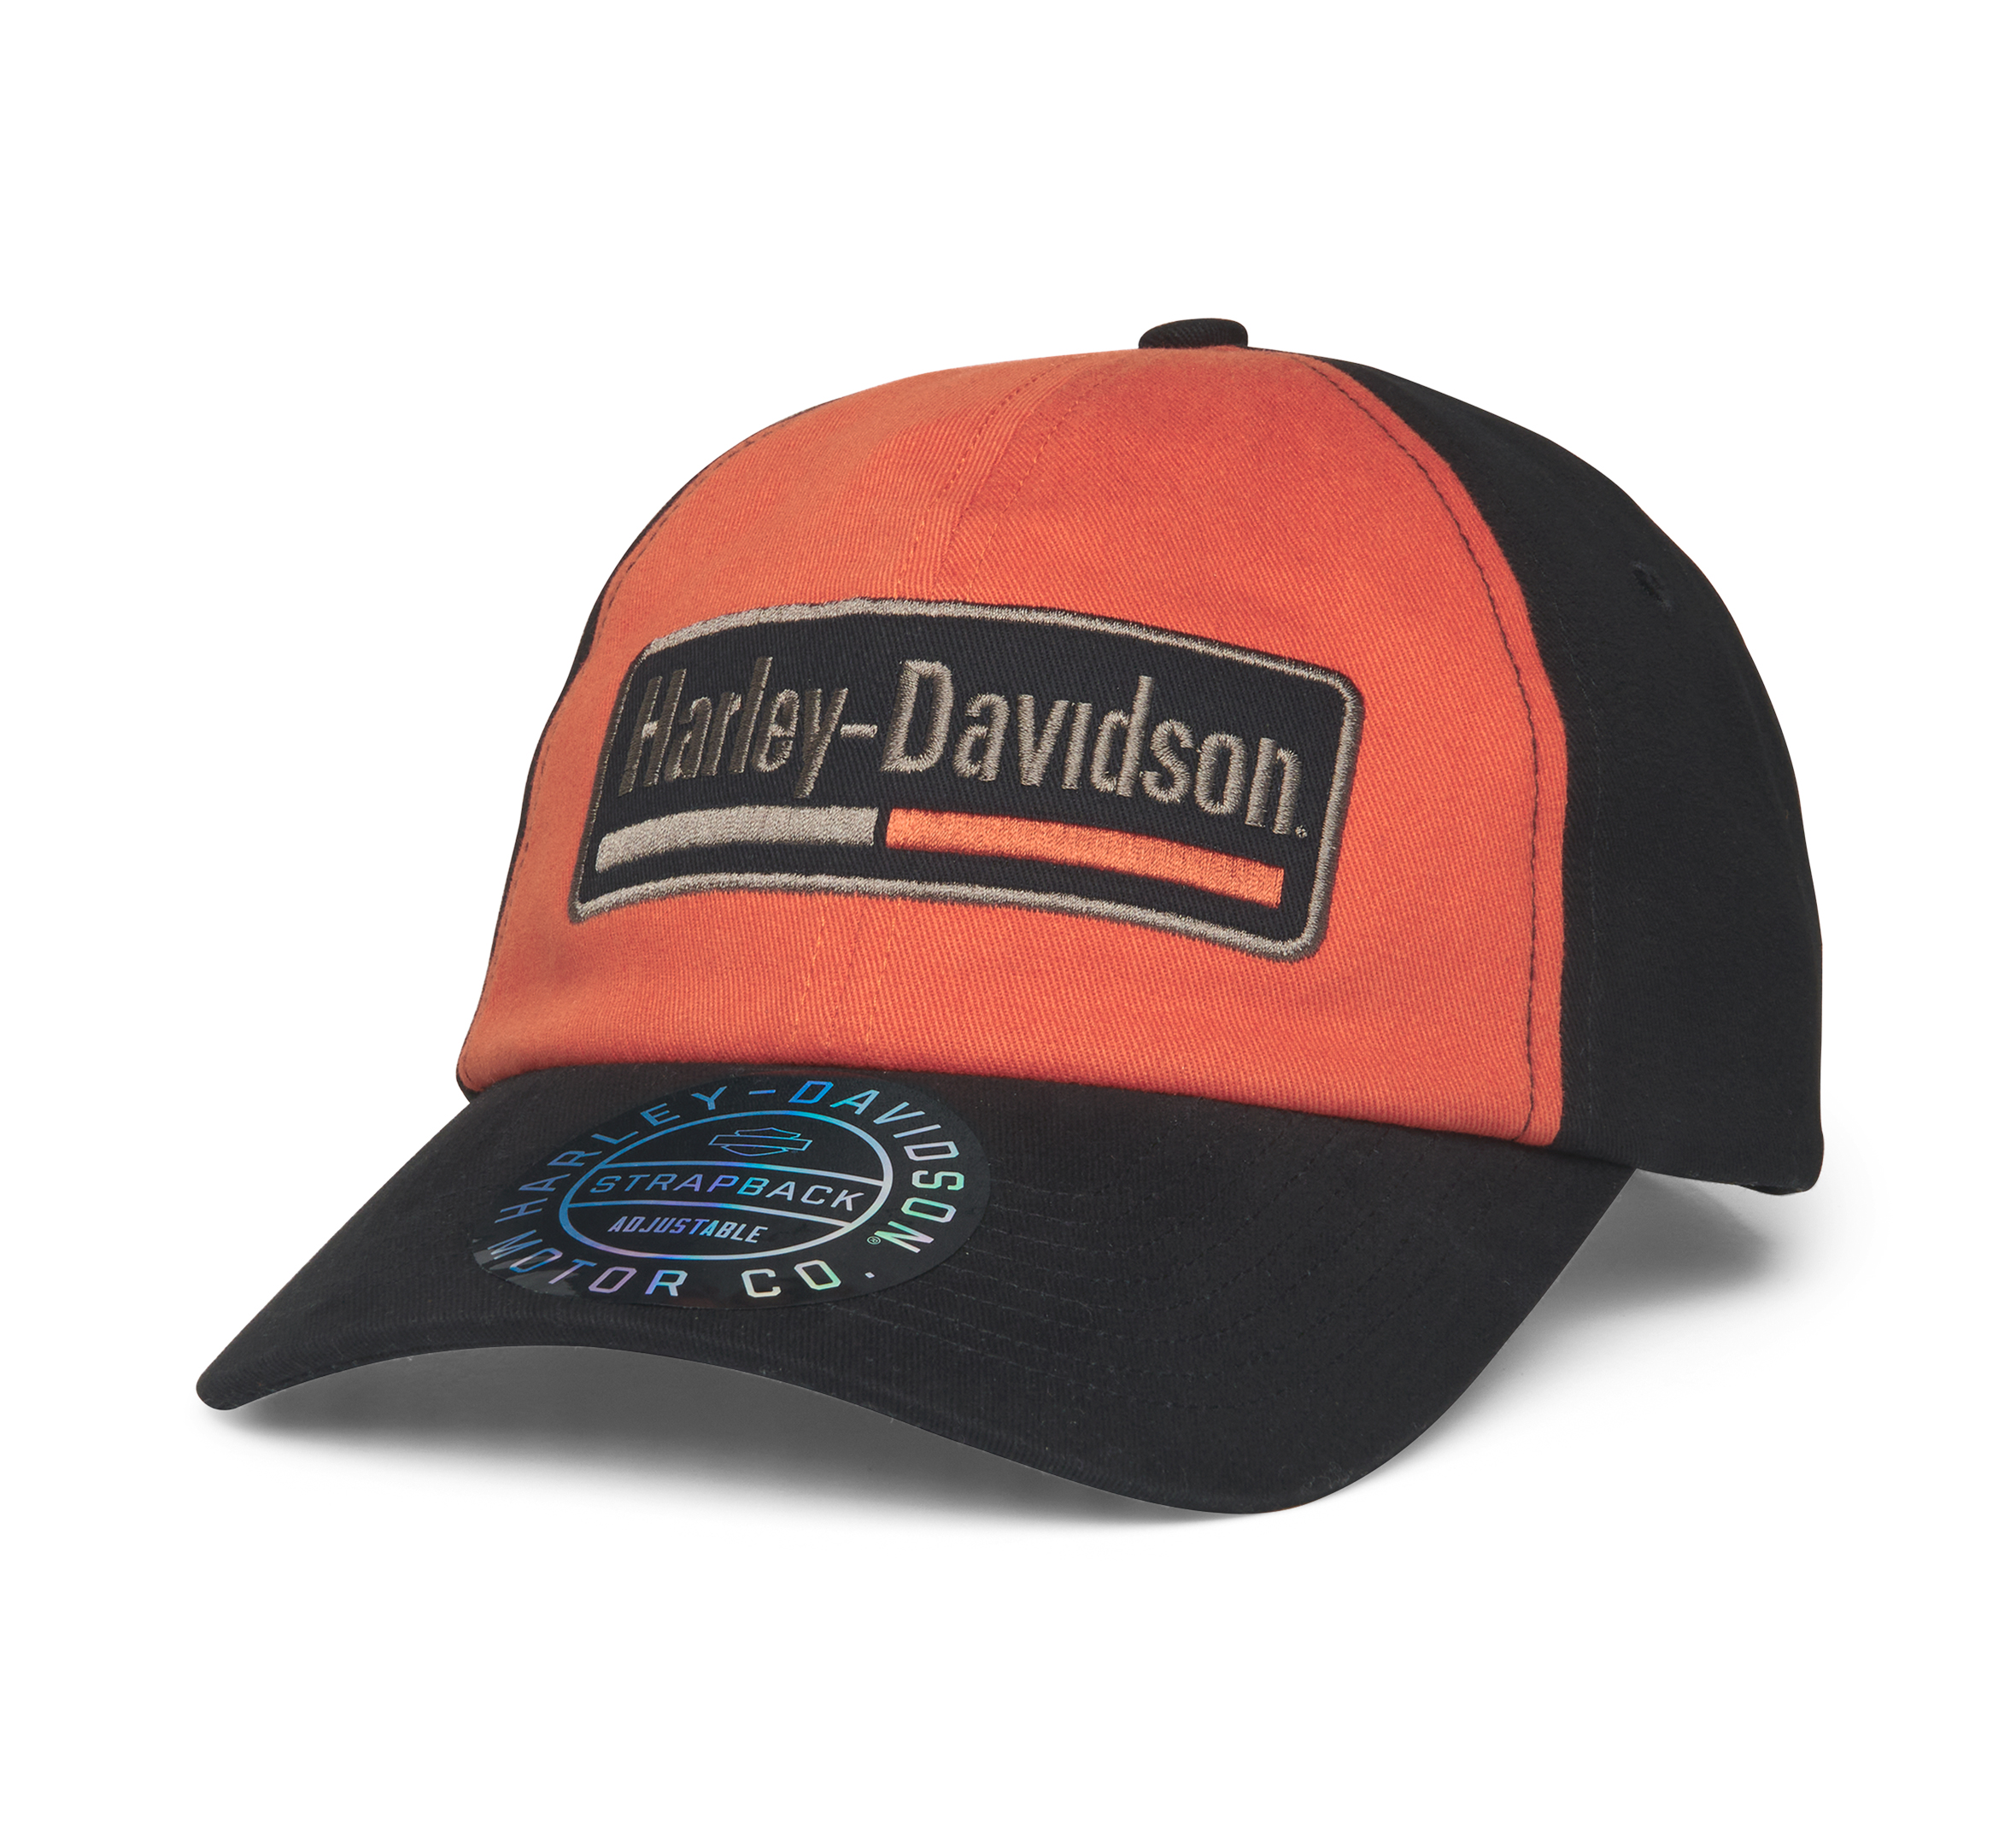 Harley Davidson Cap Adjustable Strap One Size Fits Most Black /Orange Brand New 